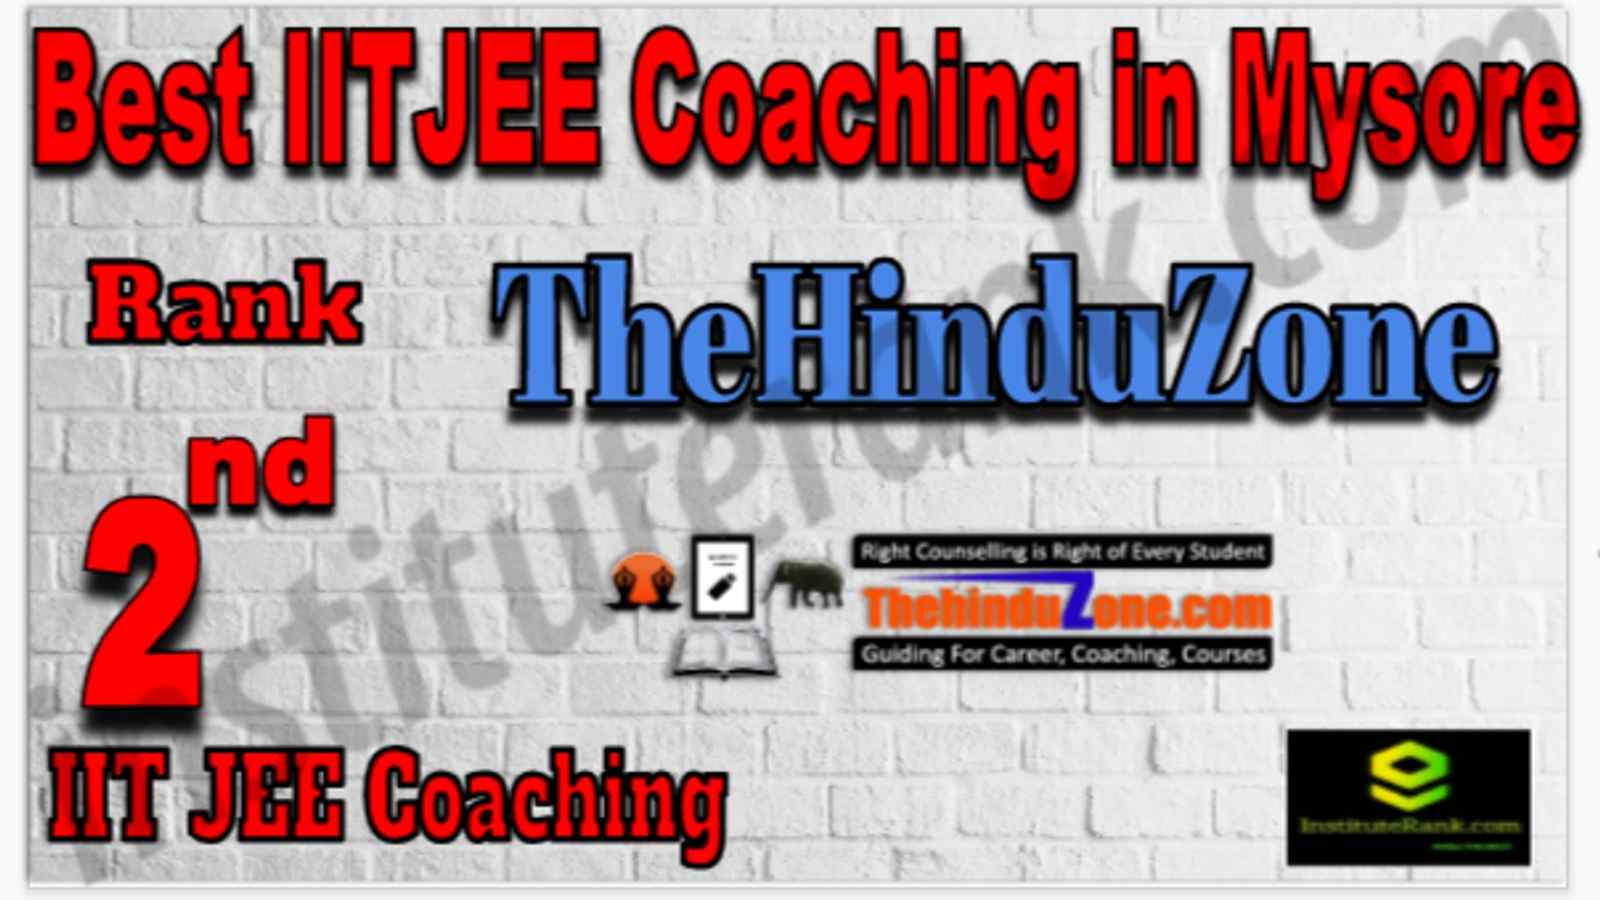 Rank 2 Best IIT Coaching in Mysore